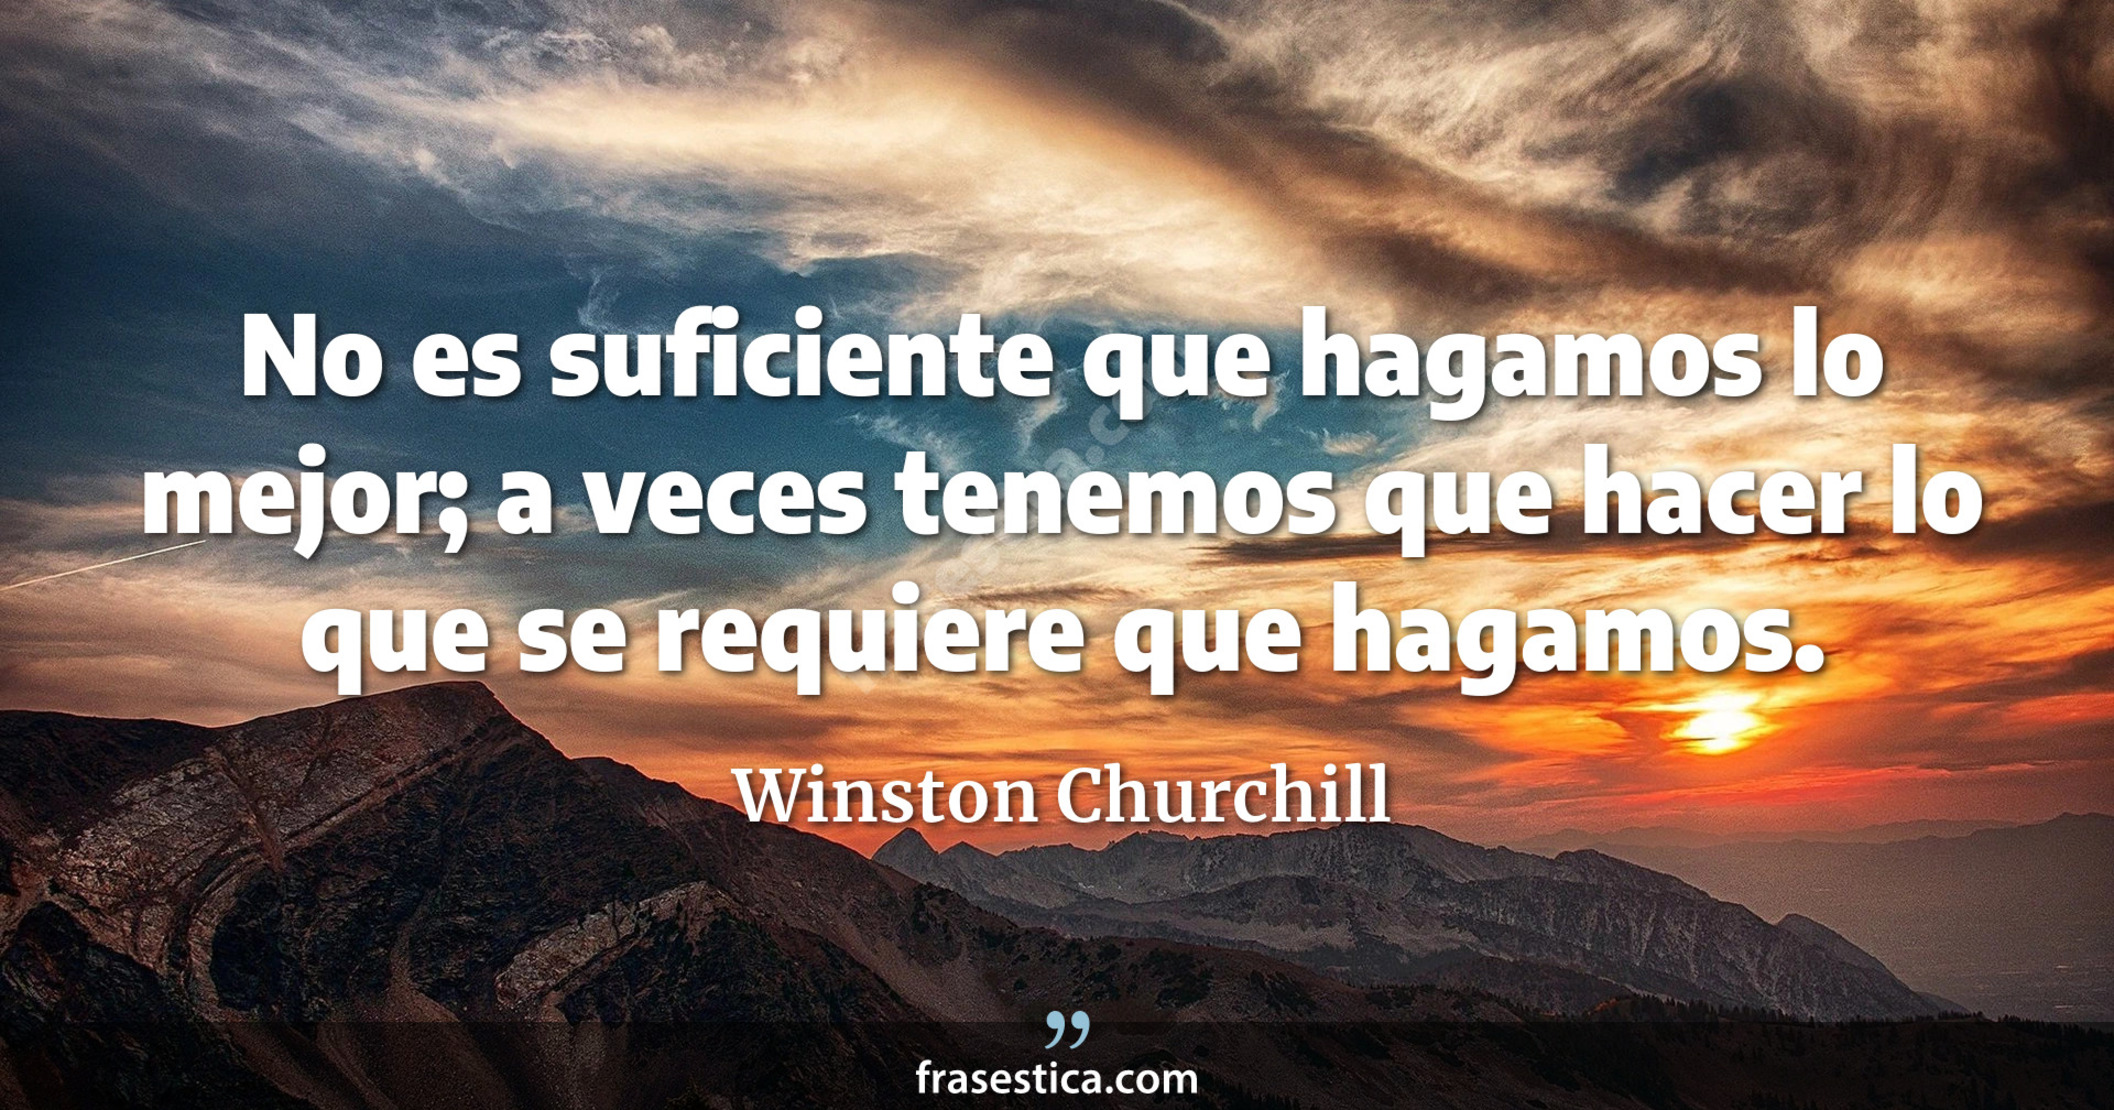 No es suficiente que hagamos lo mejor; a veces tenemos que hacer lo que se requiere que hagamos. - Winston Churchill